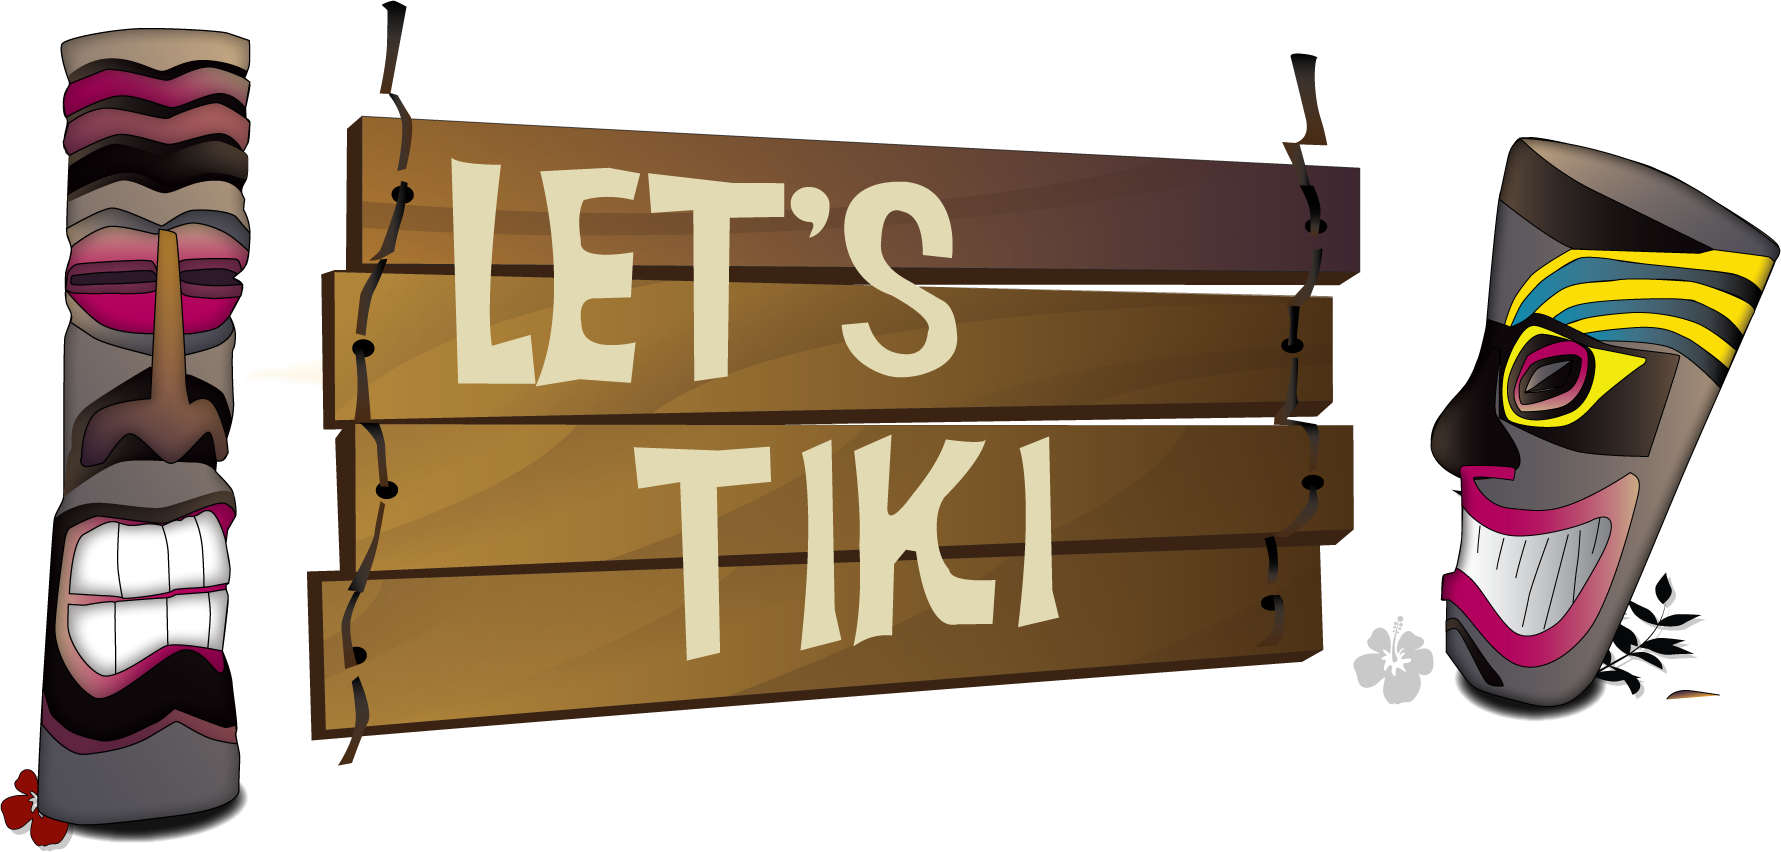 Let's Tiki